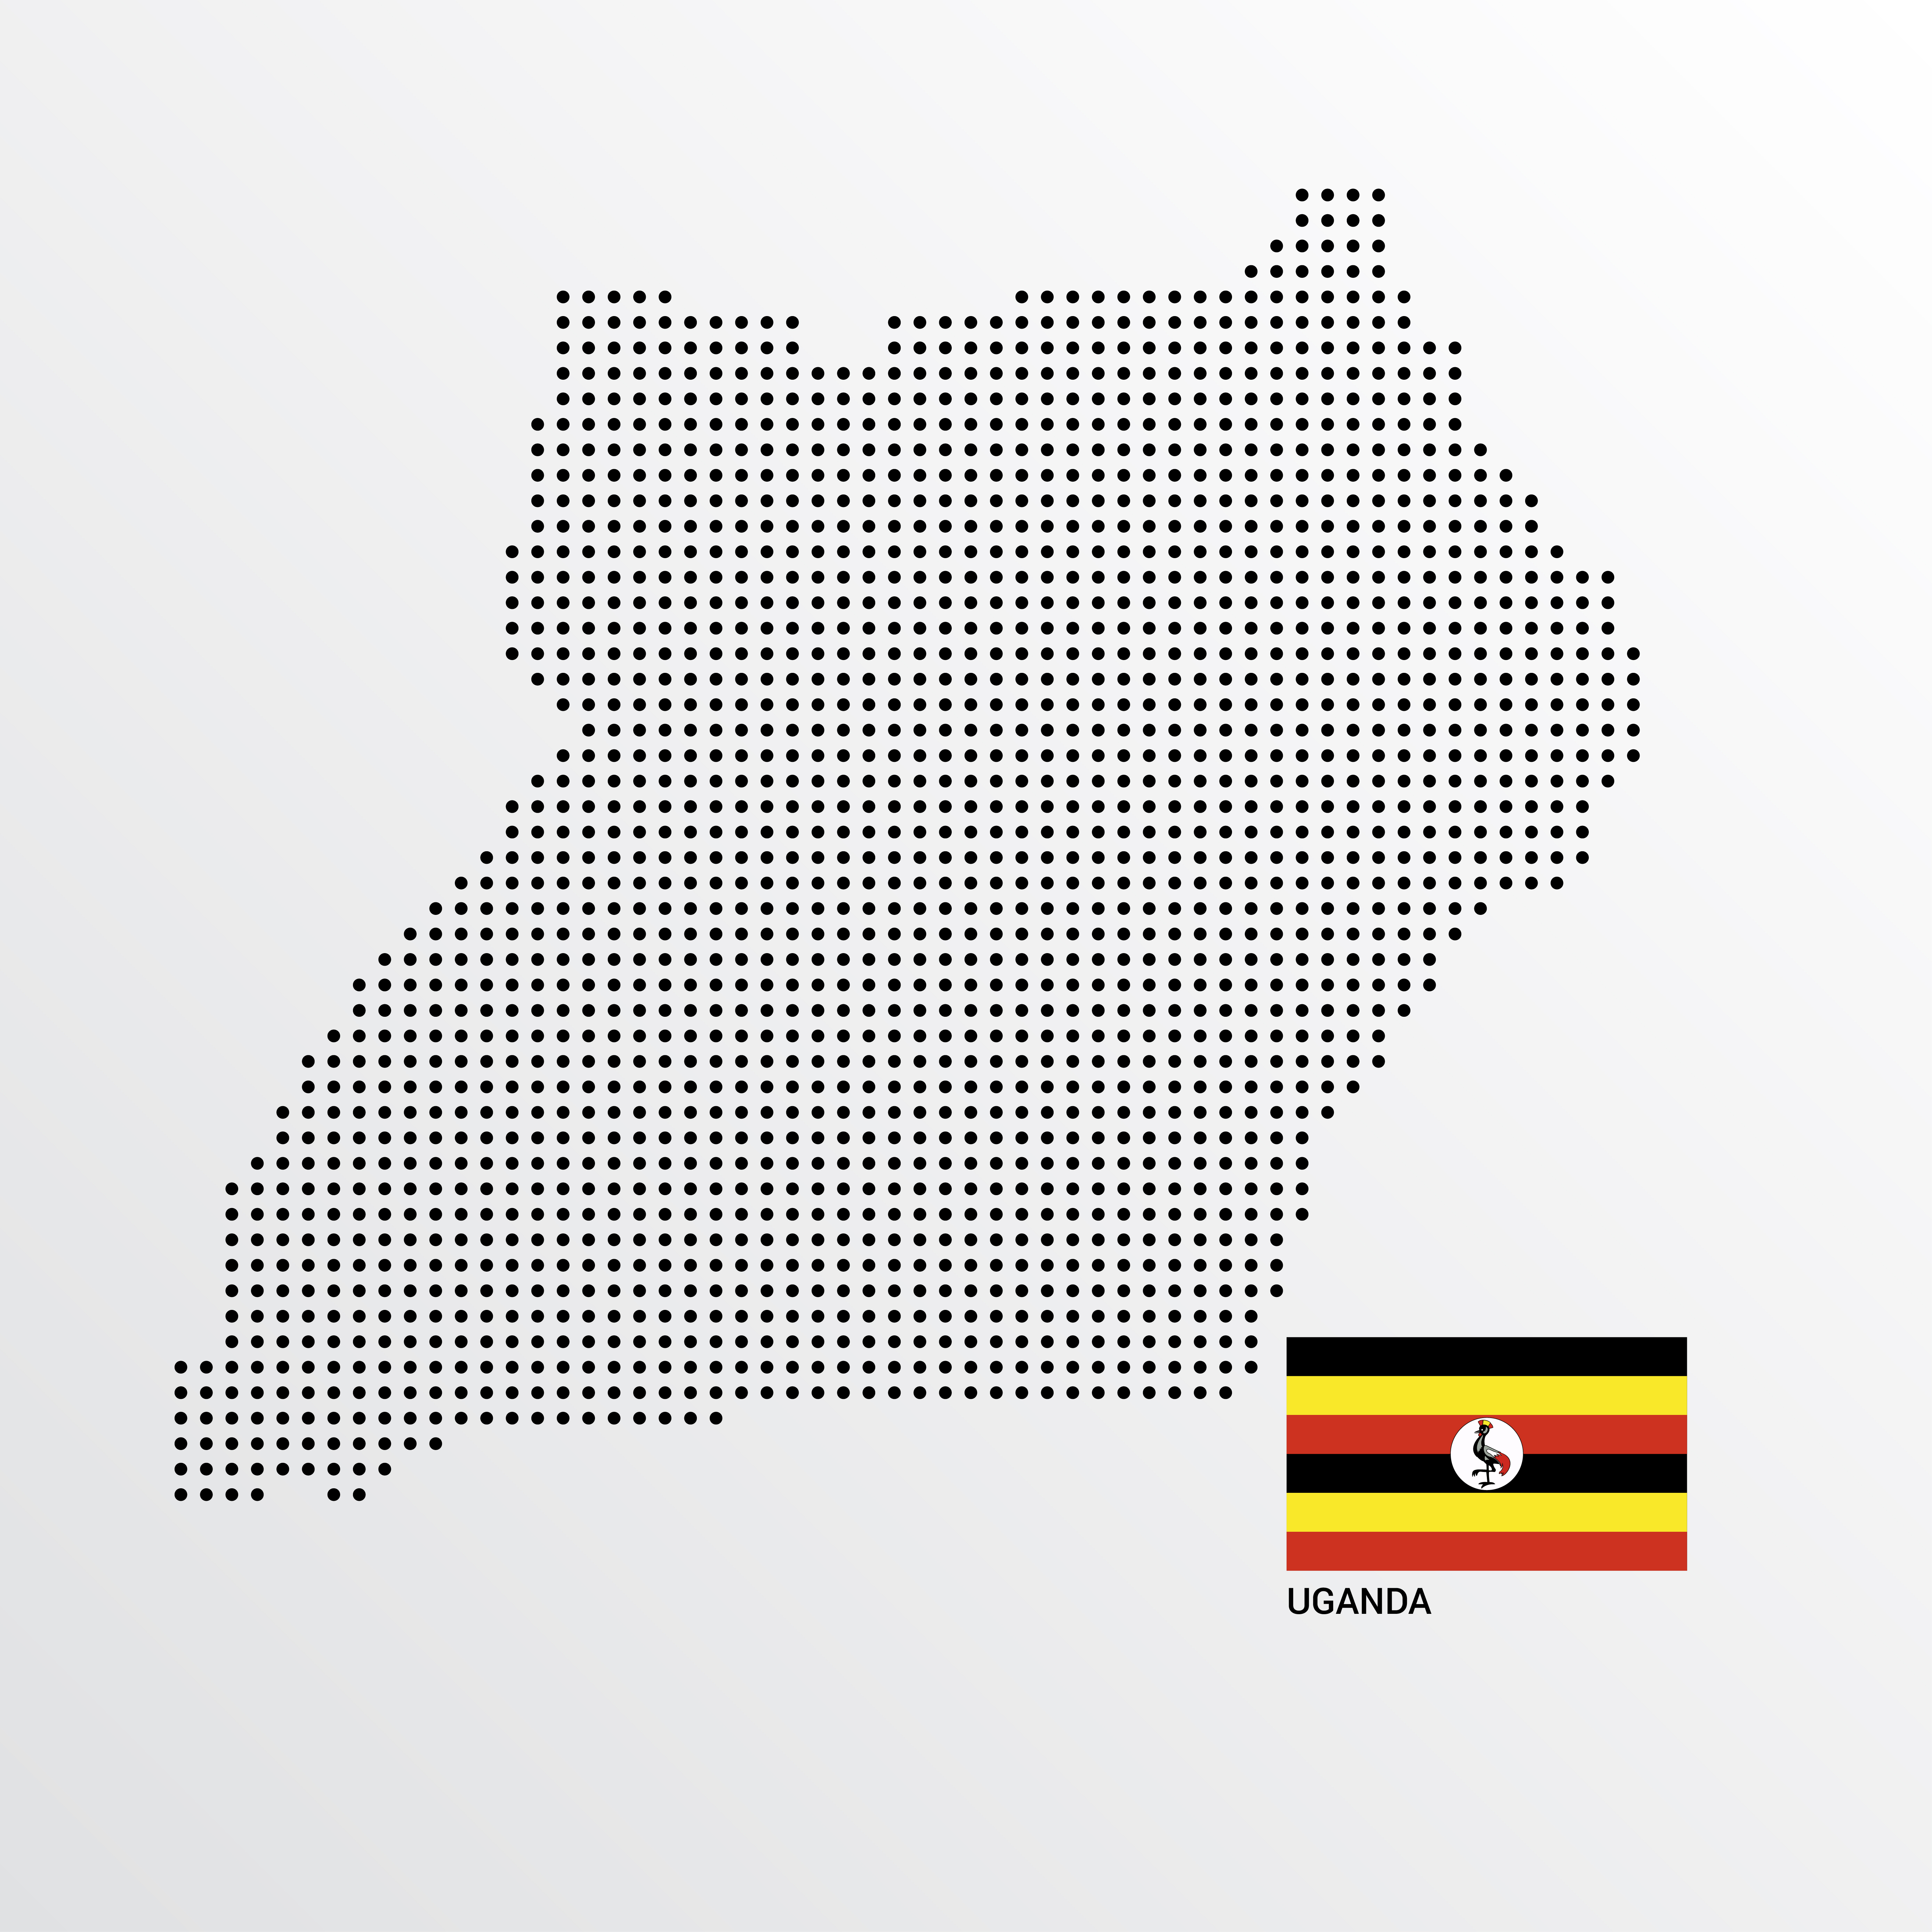 Uganda's Flag and map